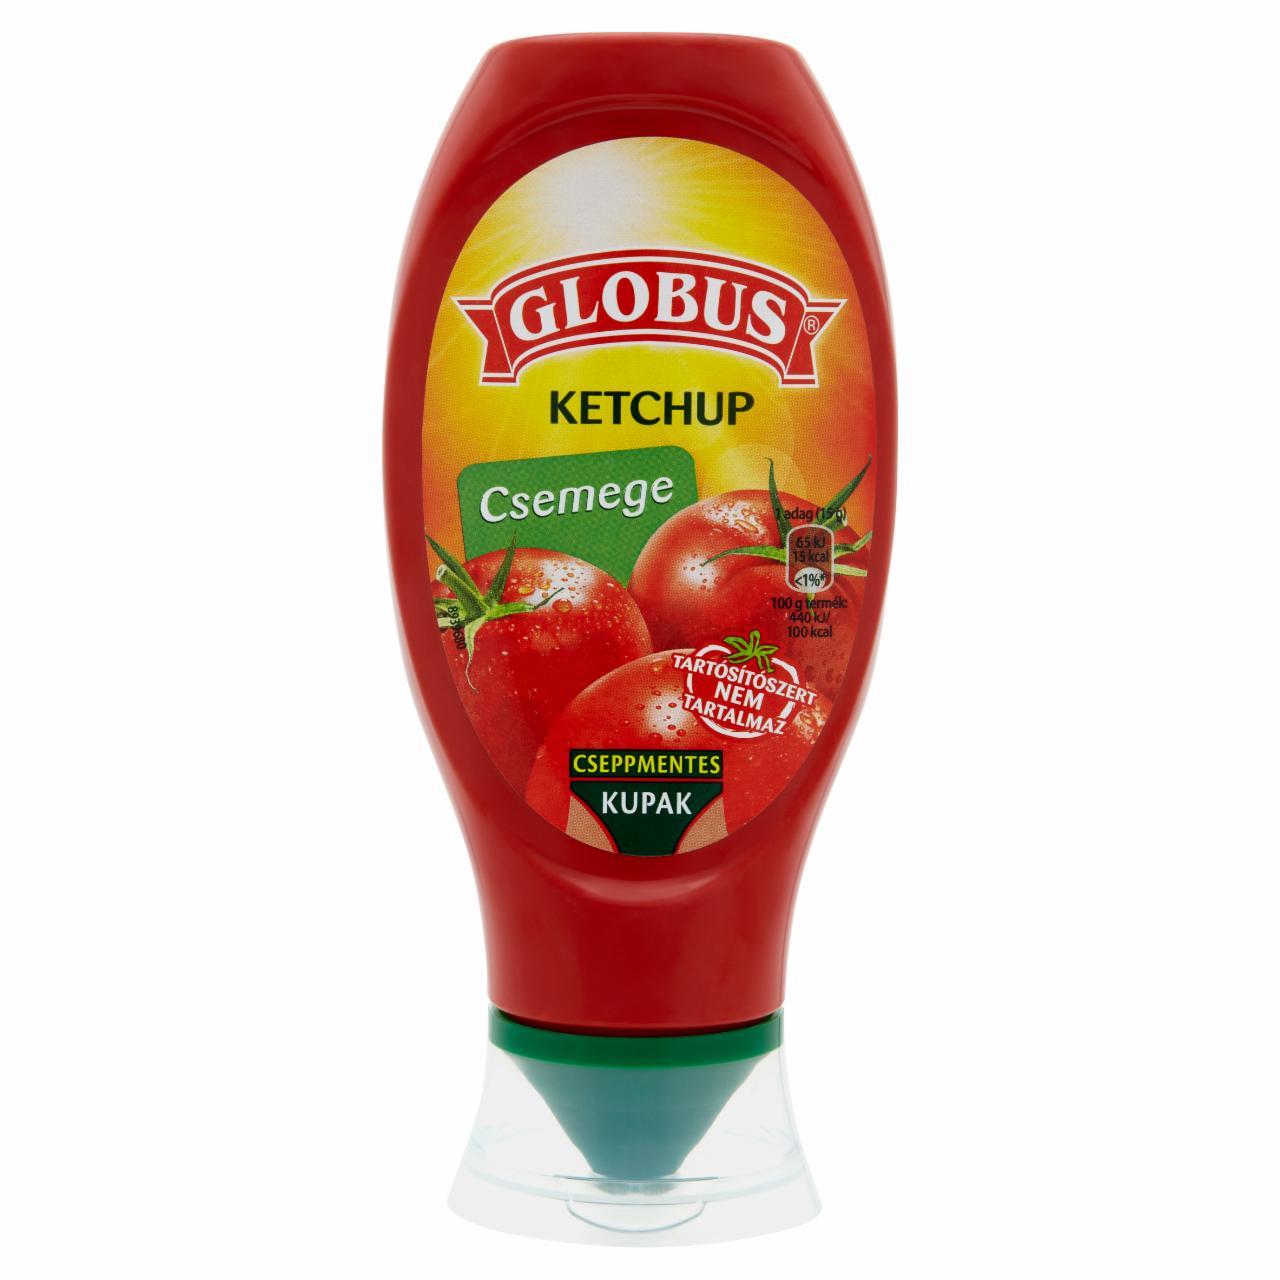 Képek - Csemege ketchup Globus